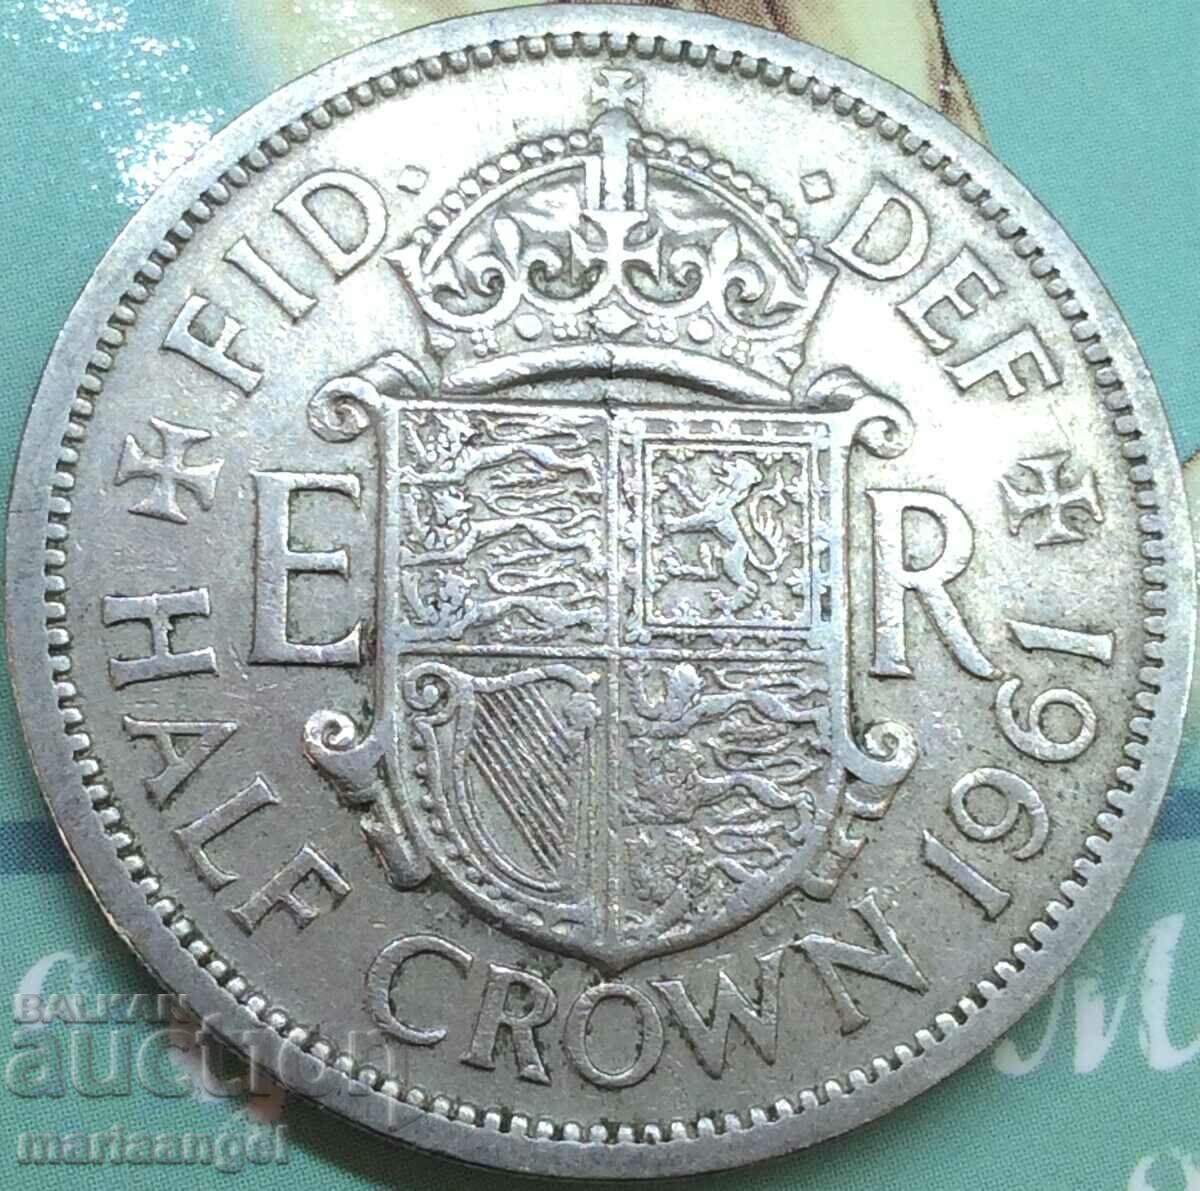 Marea Britanie 1/2 coroană 1961 Elisabeta a II-a